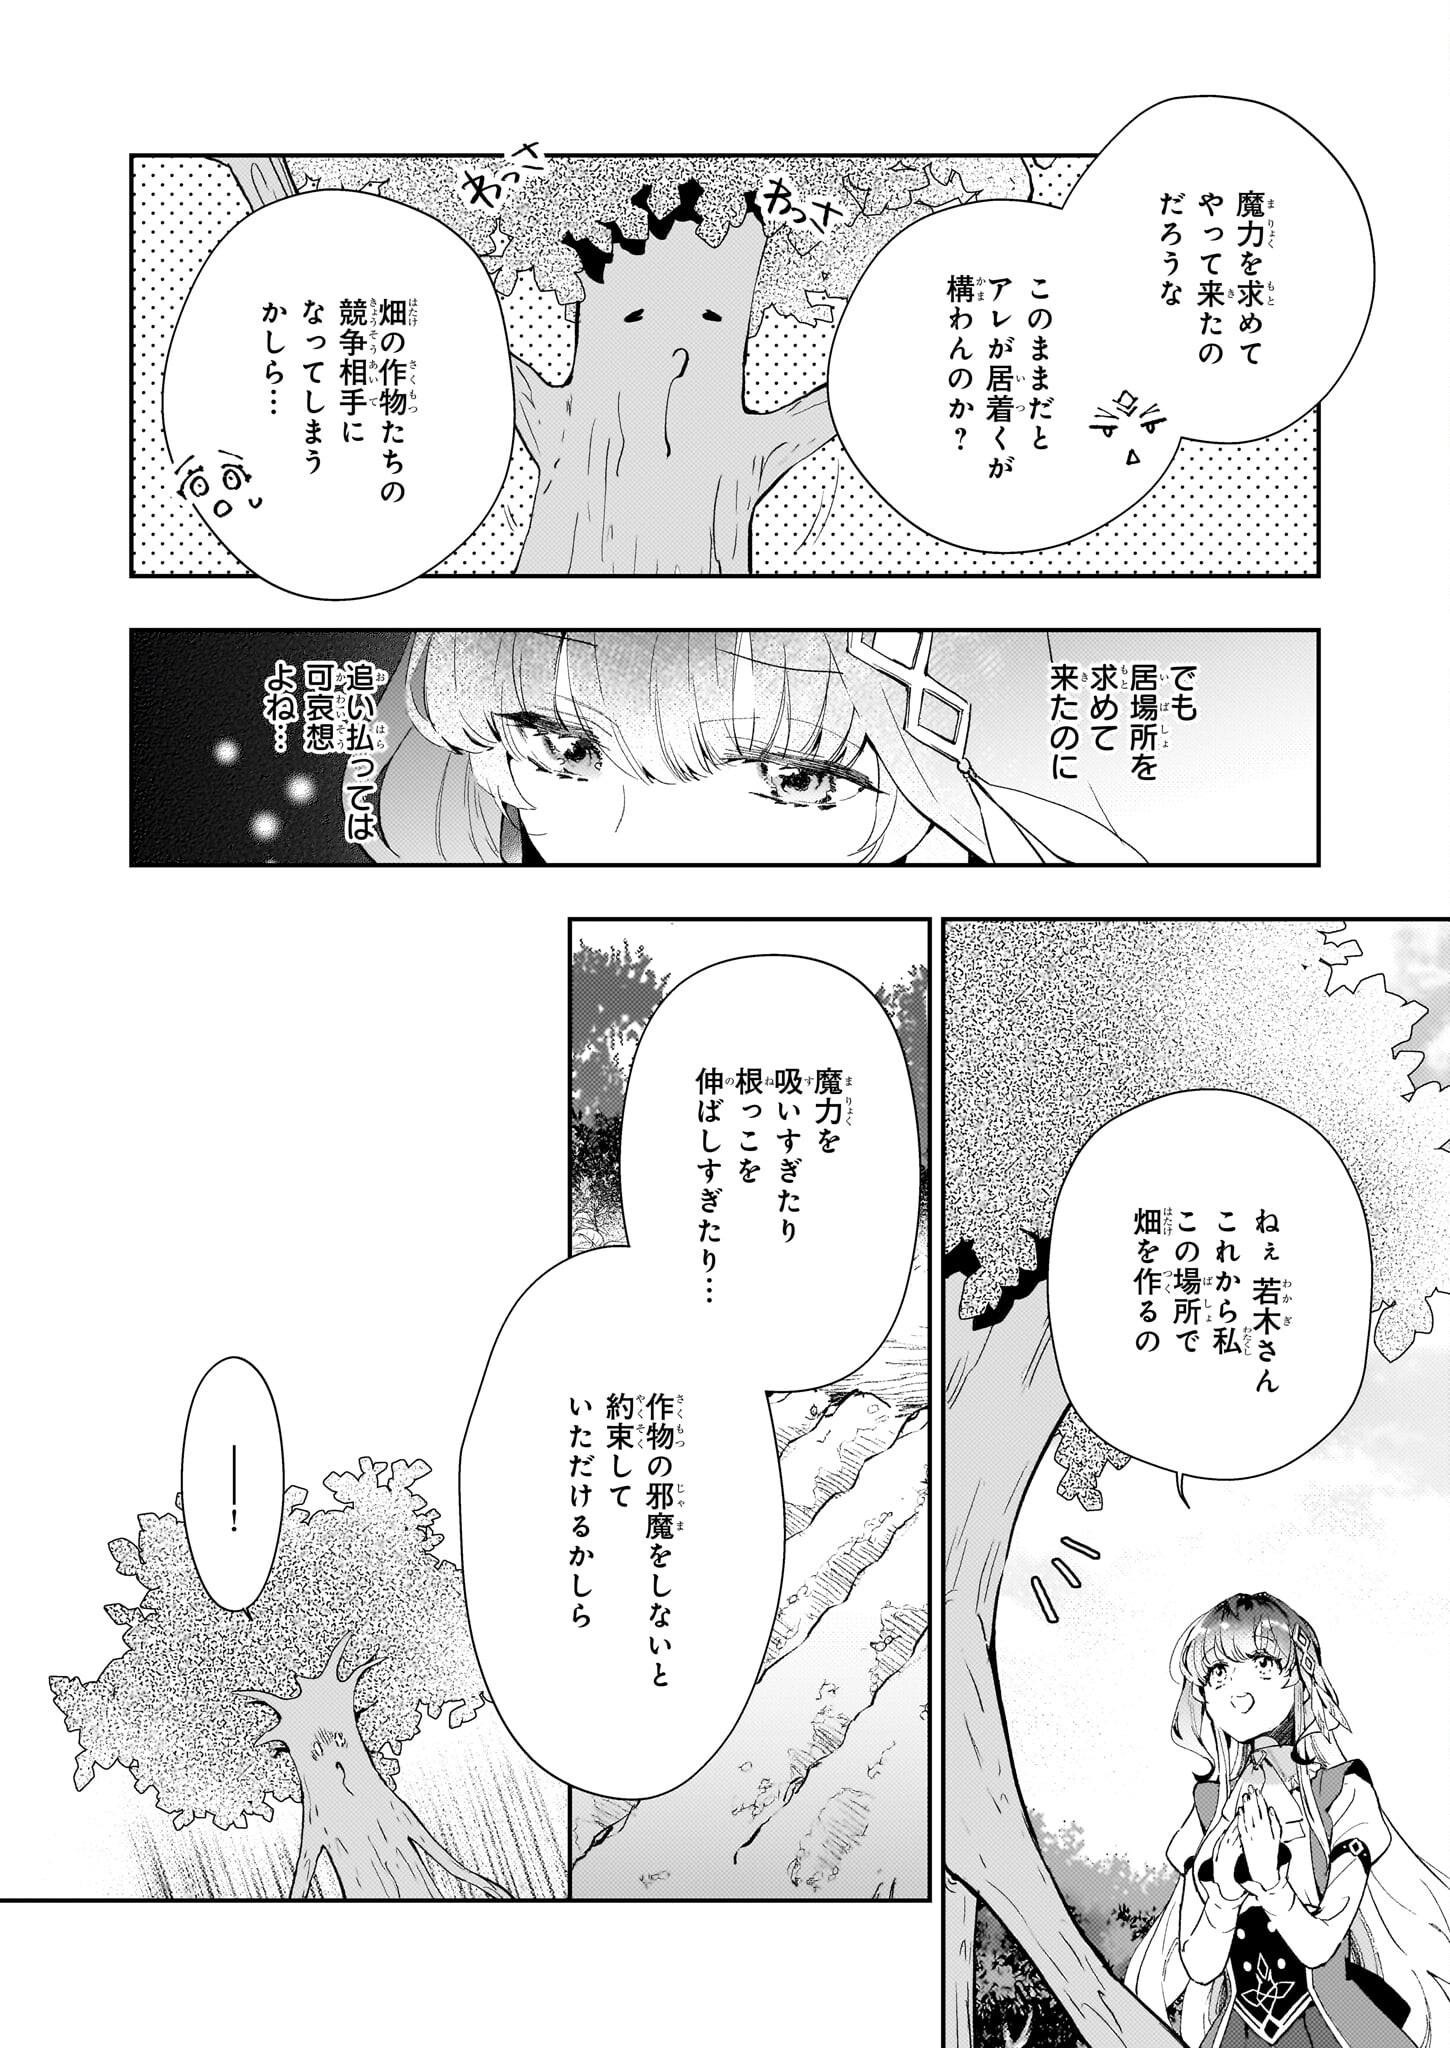 Misuterareta Ikenie Reijou wa Senyou Skill Otoriyose de Jaryuu wo Ezuke suru - Chapter 12 - Page 2